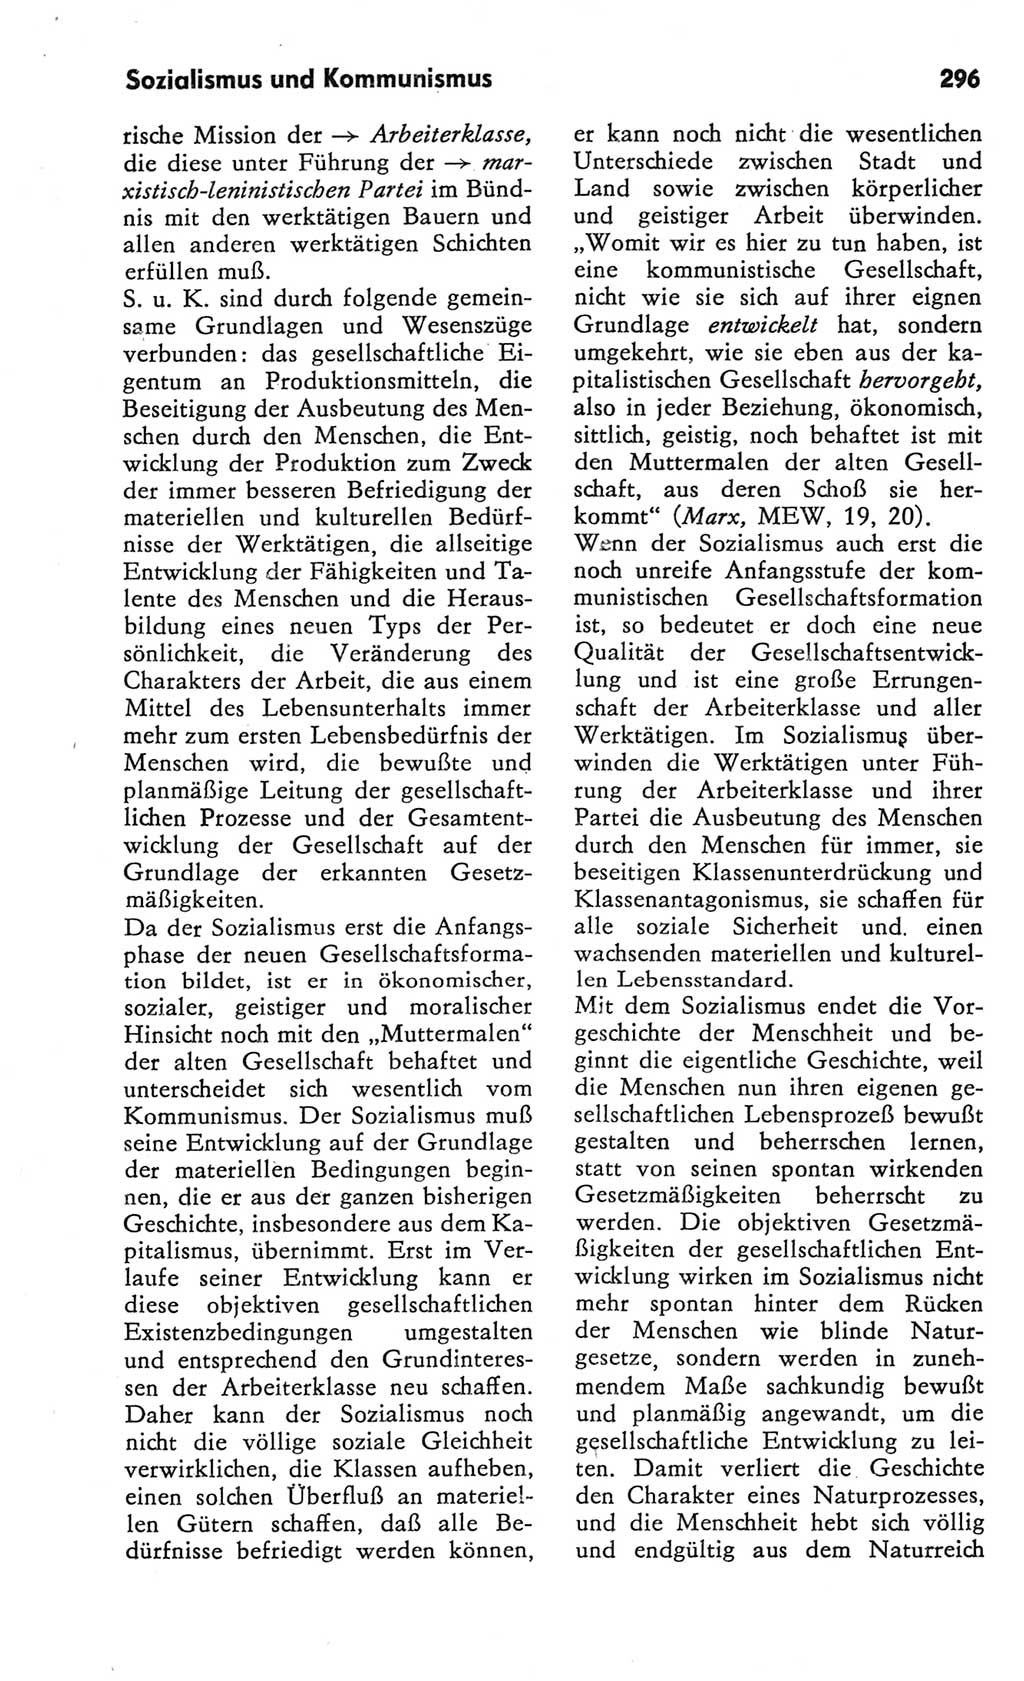 Kleines Wörterbuch der marxistisch-leninistischen Philosophie [Deutsche Demokratische Republik (DDR)] 1982, Seite 296 (Kl. Wb. ML Phil. DDR 1982, S. 296)